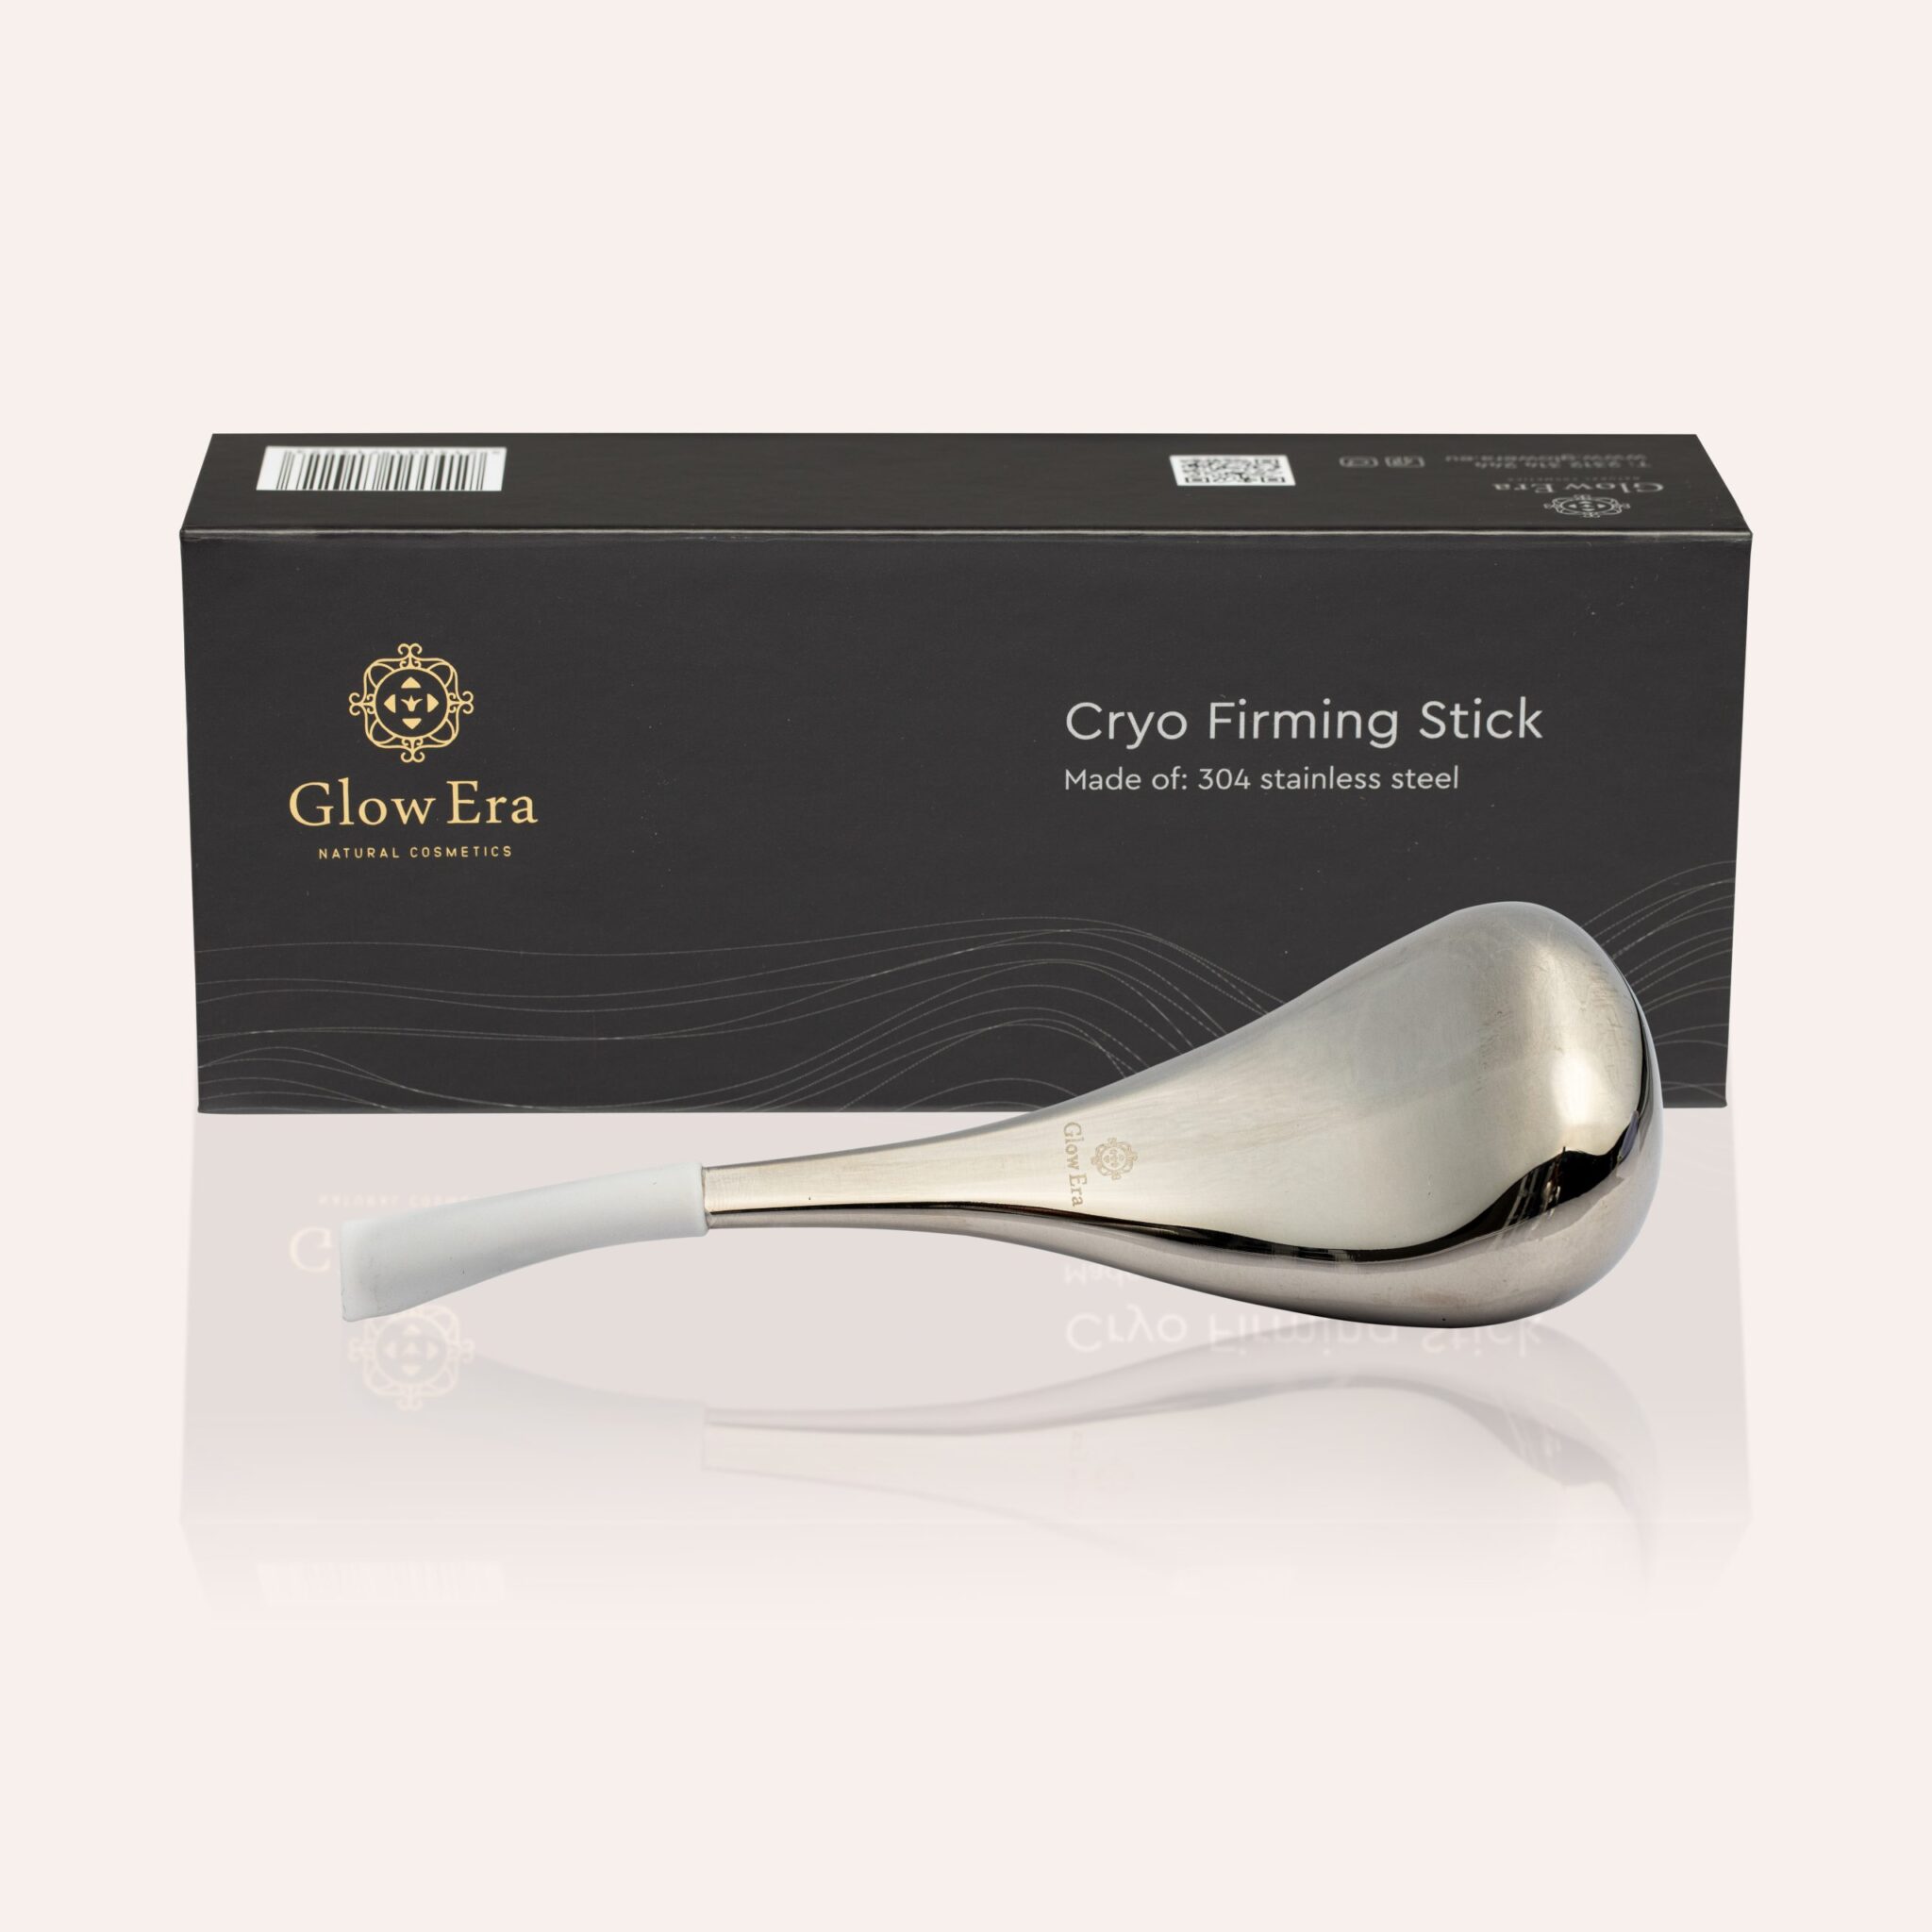 Facial Cryotherapy Cryo Firming Stick